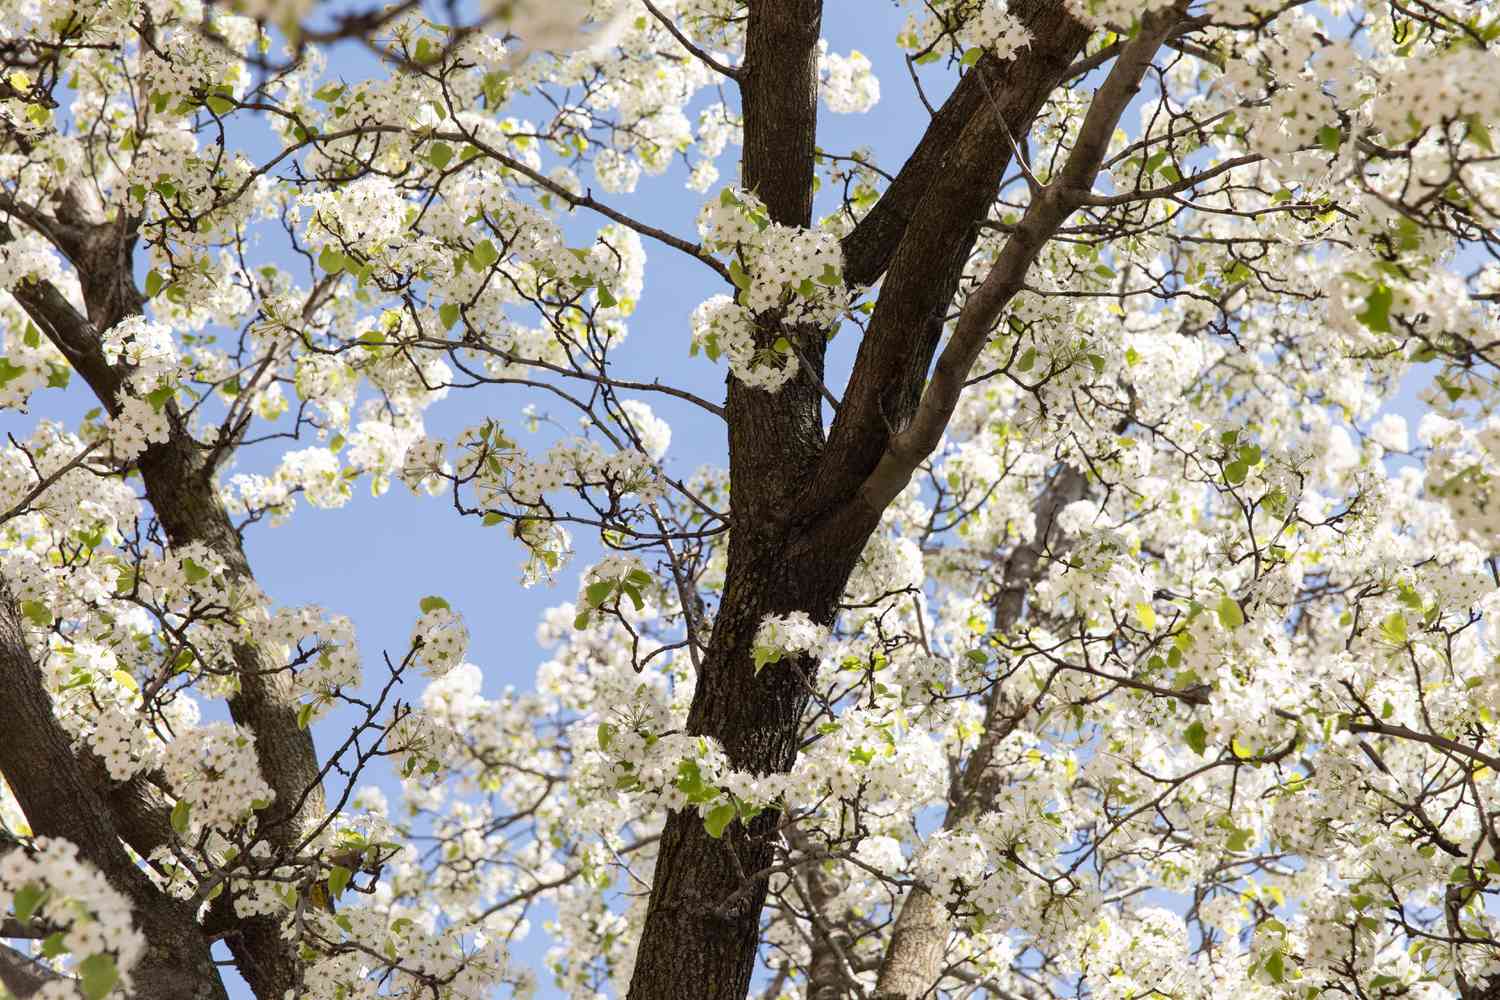 Kalley-Birnenbaumstamm umgeben von weißen Blüten an den Ästen